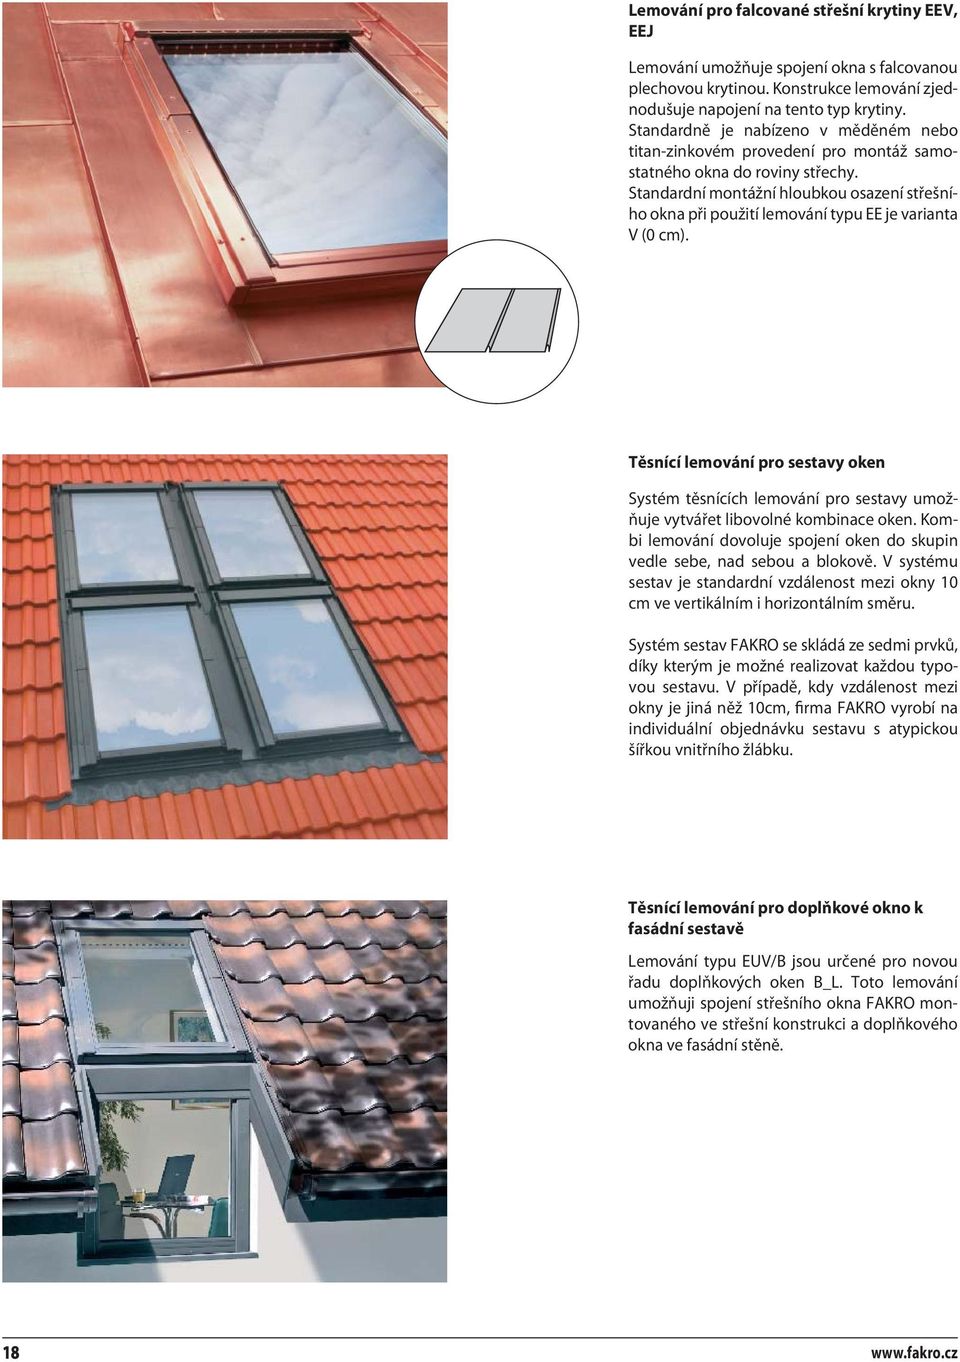 Standardní montážní hloubkou osazení střešního okna při použití lemování typu EE je varianta V (0 cm).